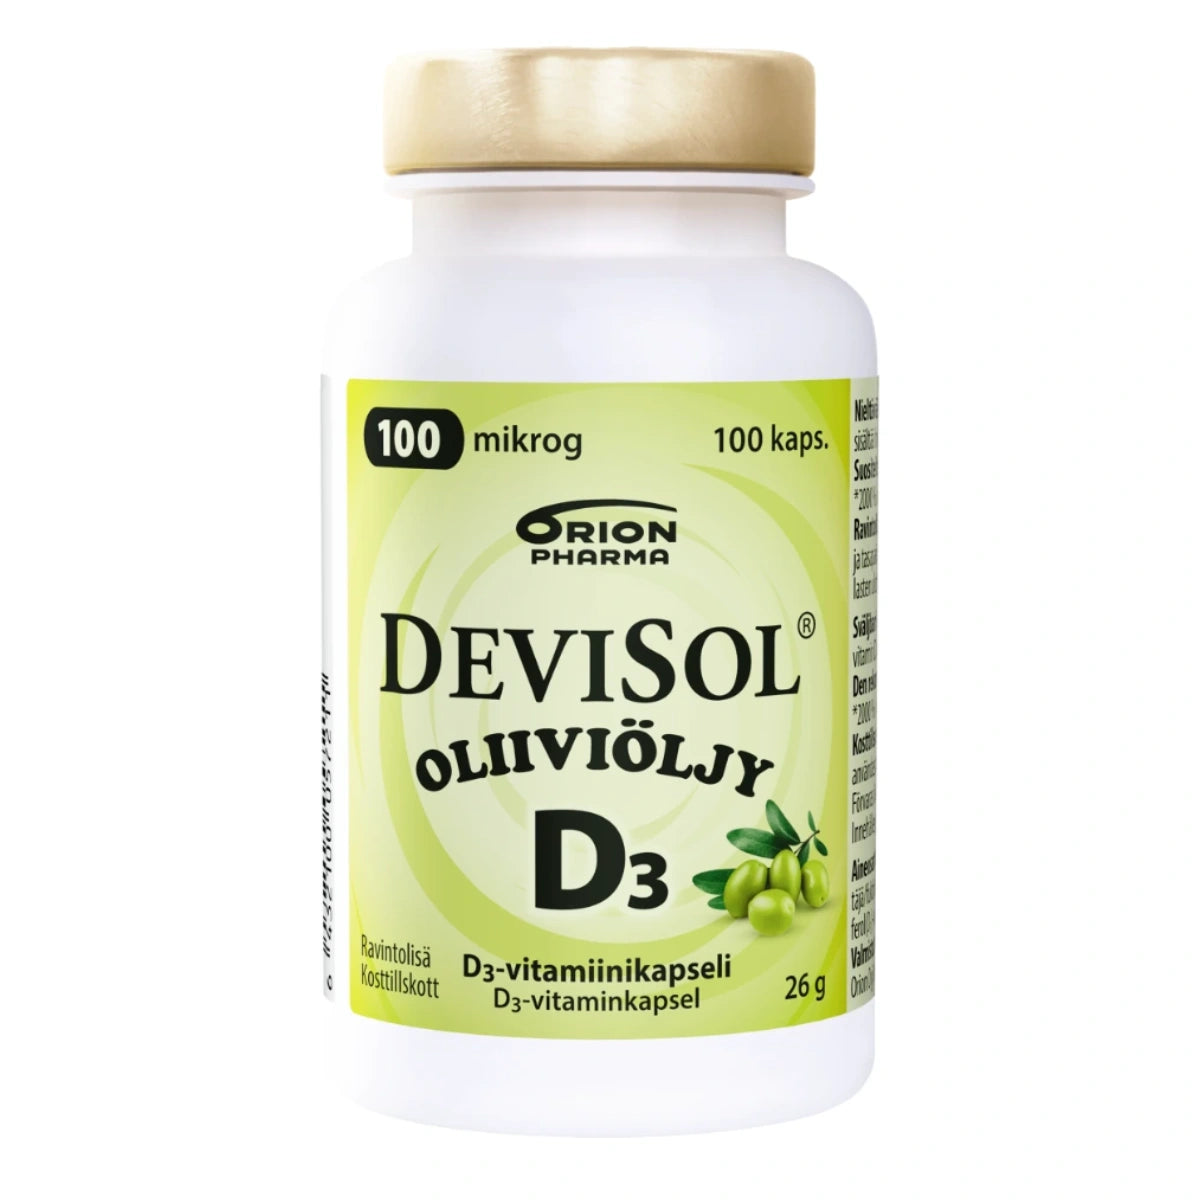 DEVISOL Oliiviöljy 100 mikrog kapseli 100 kpl sisältää hyvin imeytyvää D3-vitamiinia ja korkealaatuista ekstra-neitsytoliiviöljyä samassa, helposti nieltävässä kapselissa.